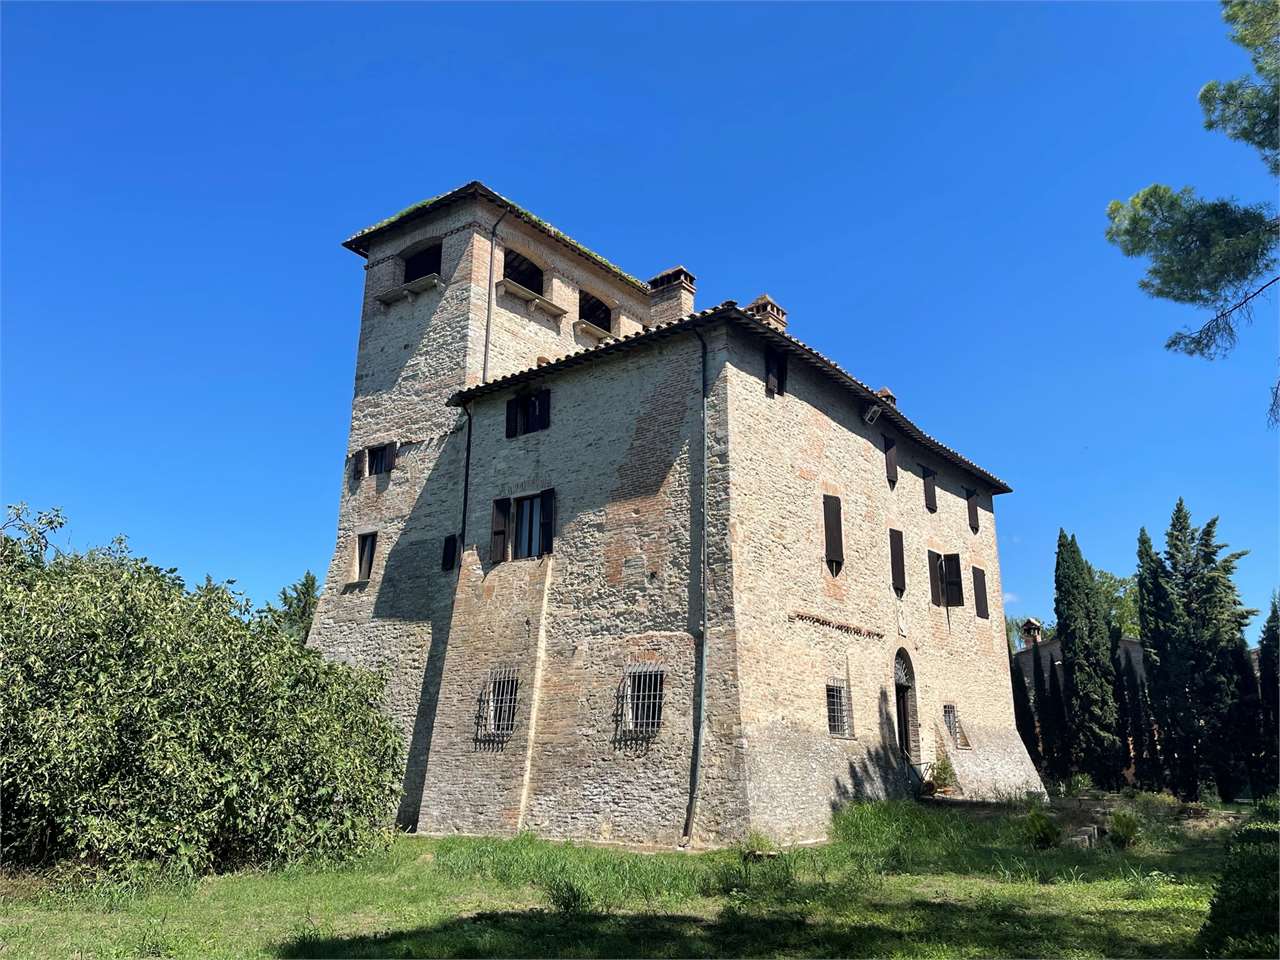 Perugia Dimora antica con torre dell'anno 1000